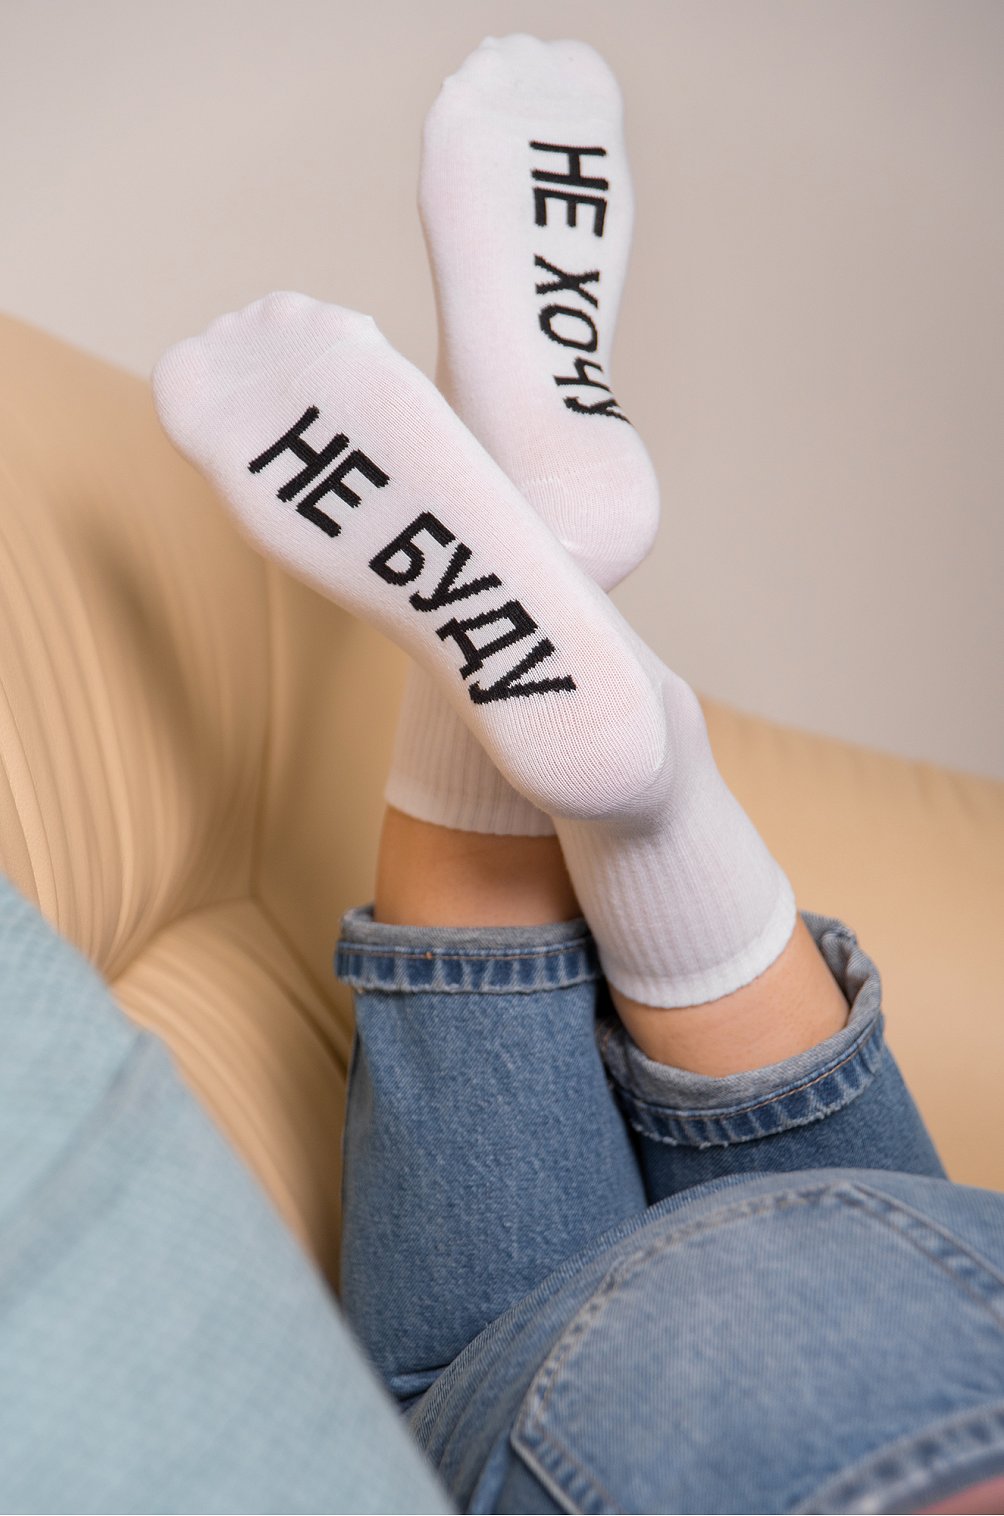 Подарок жене, носки с надписью